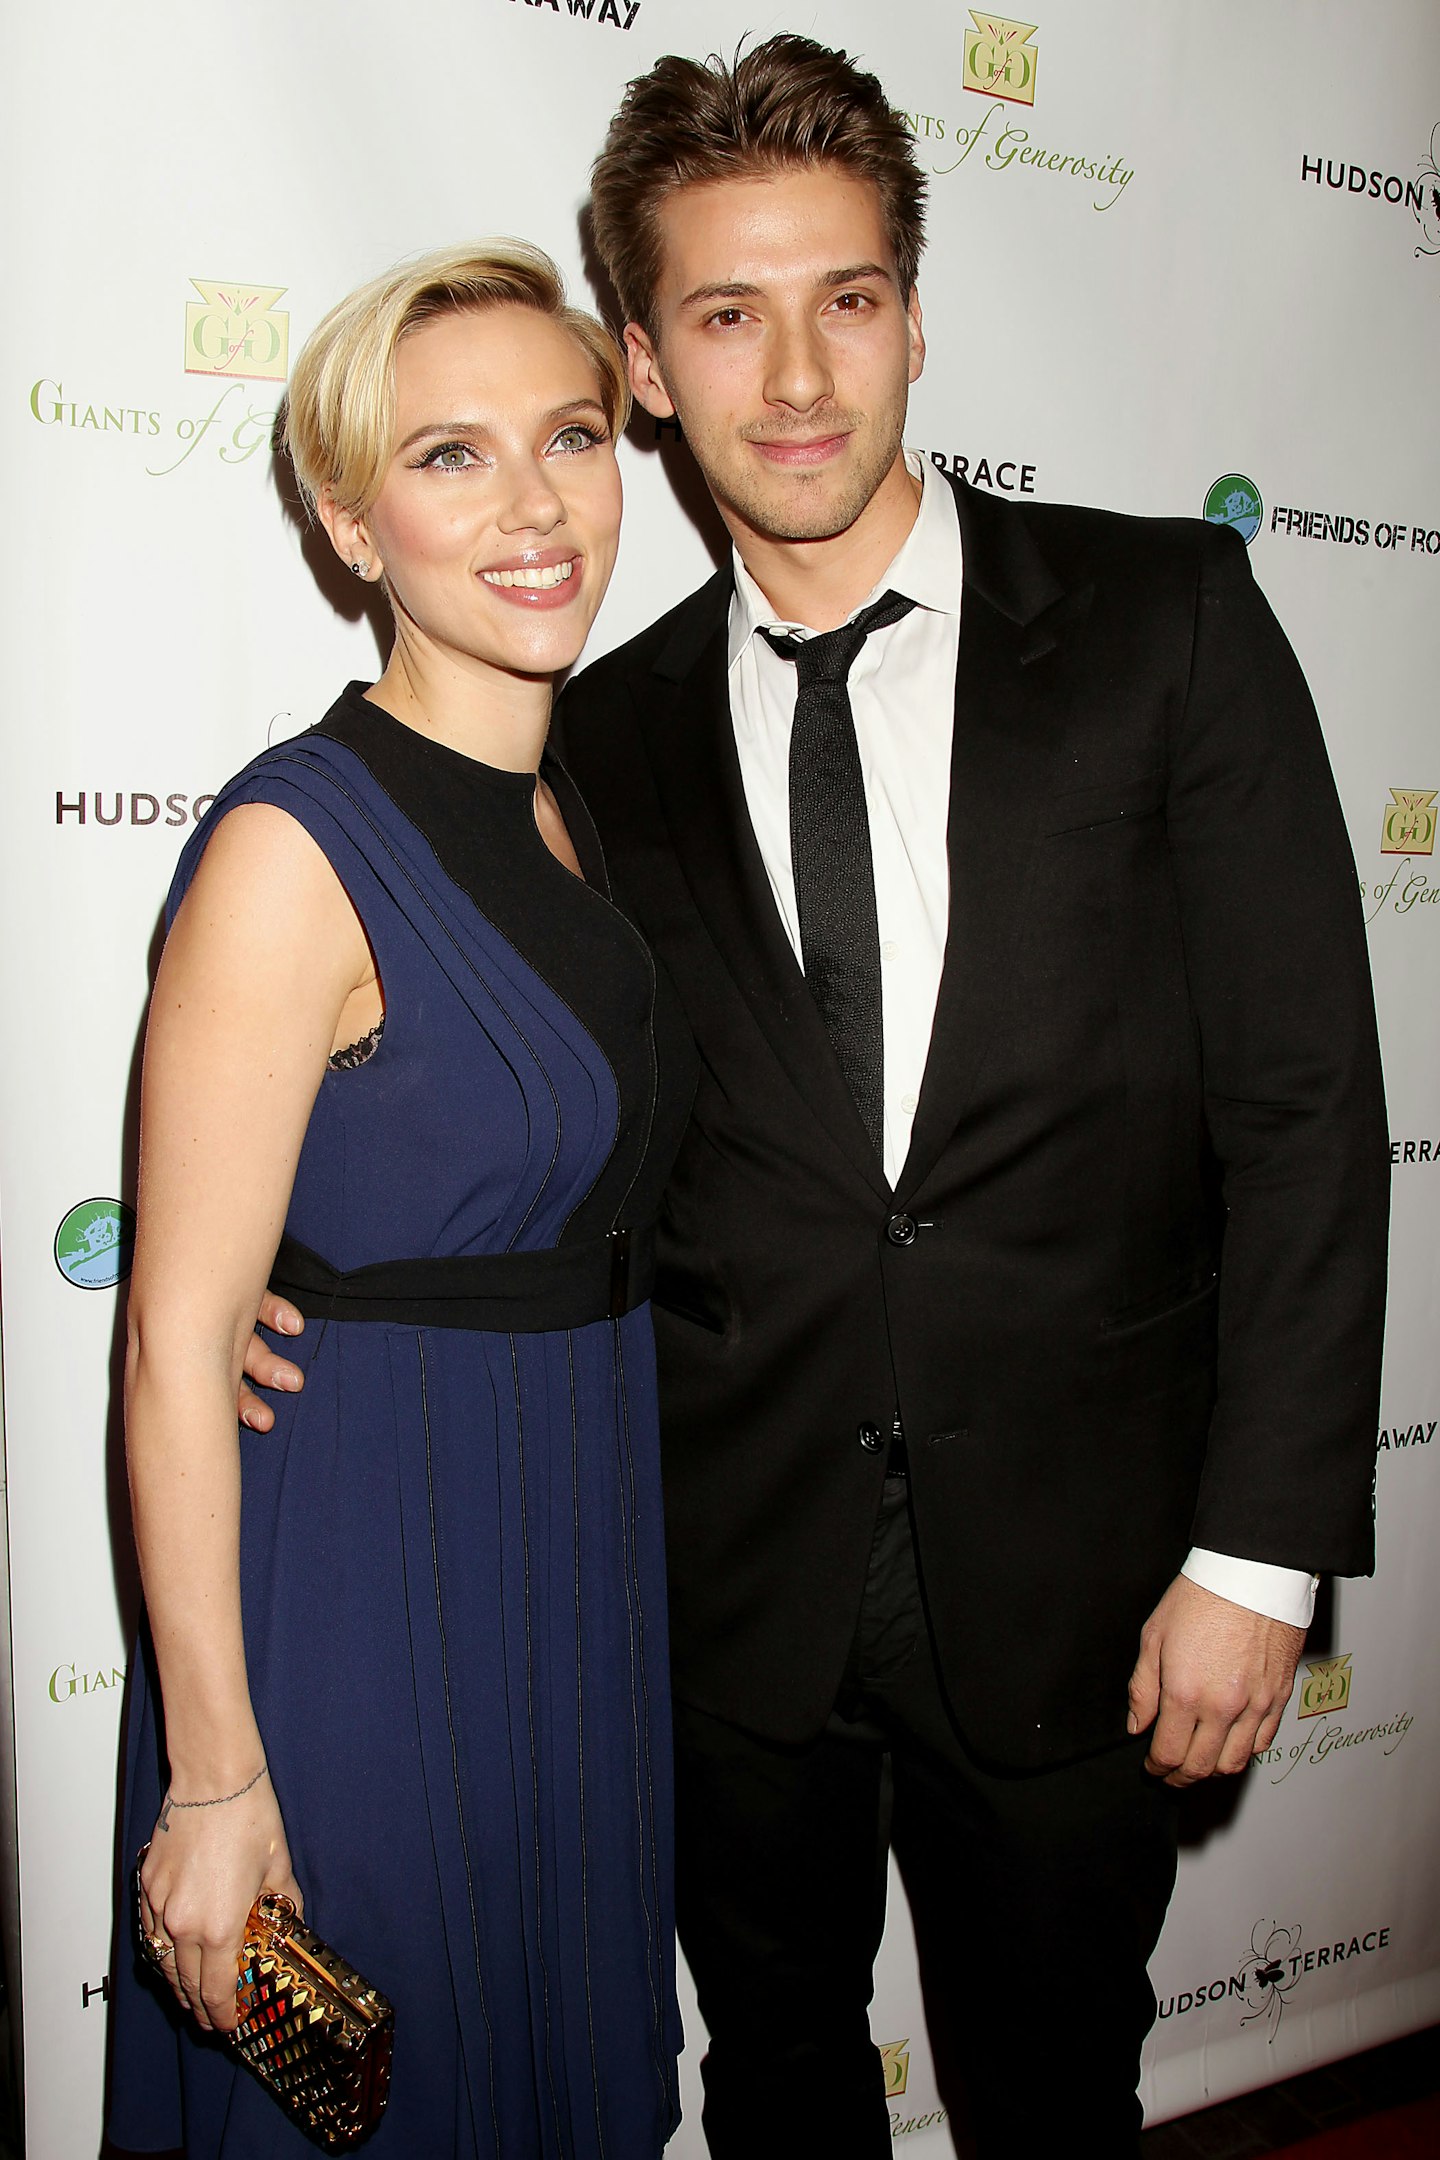 Hunter and Scarlett Johansson